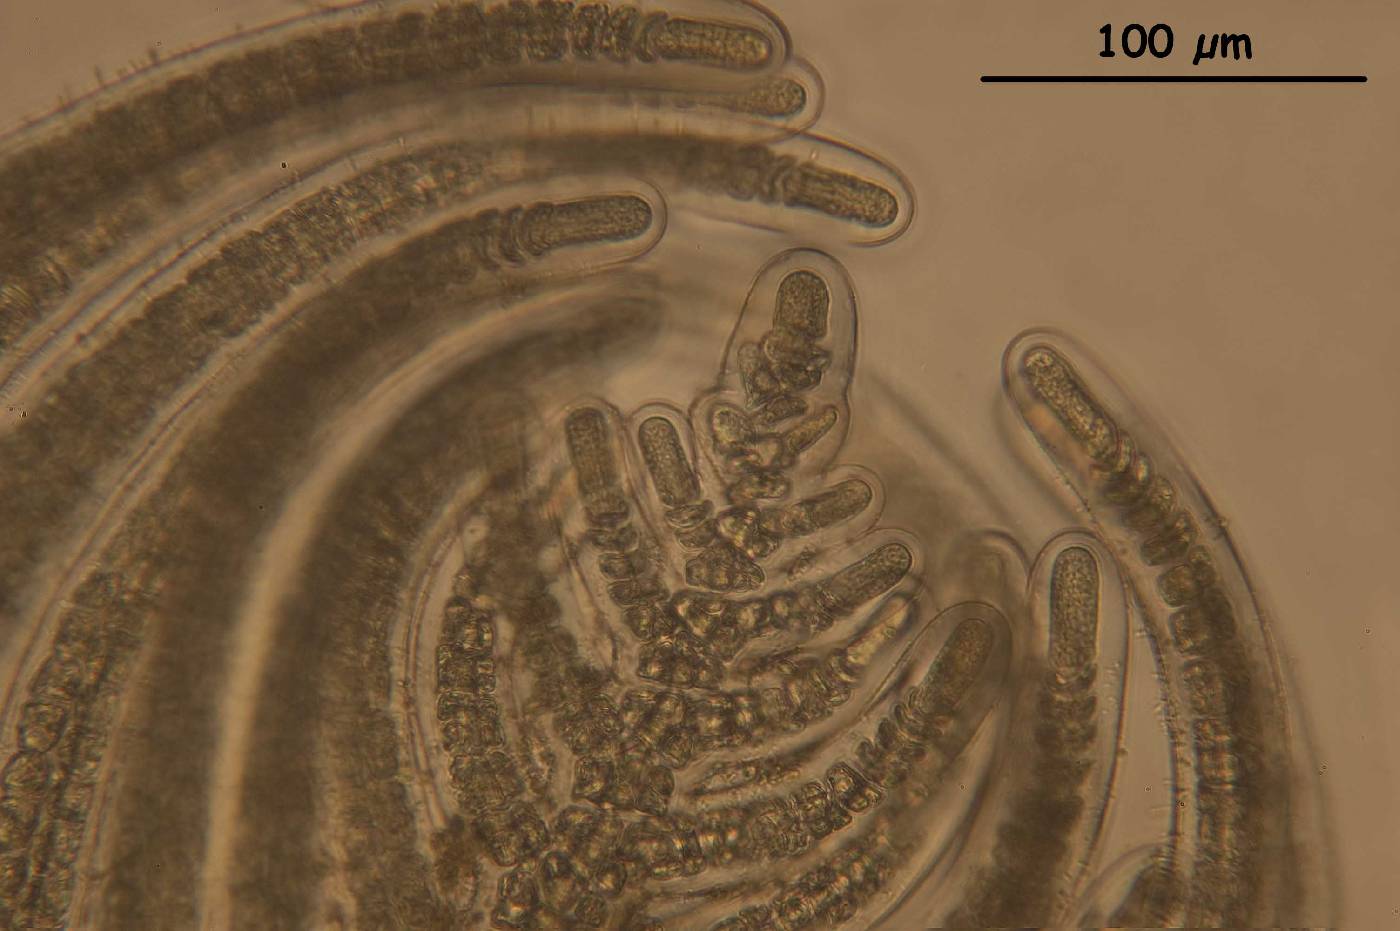 Bostrychia calliptera image